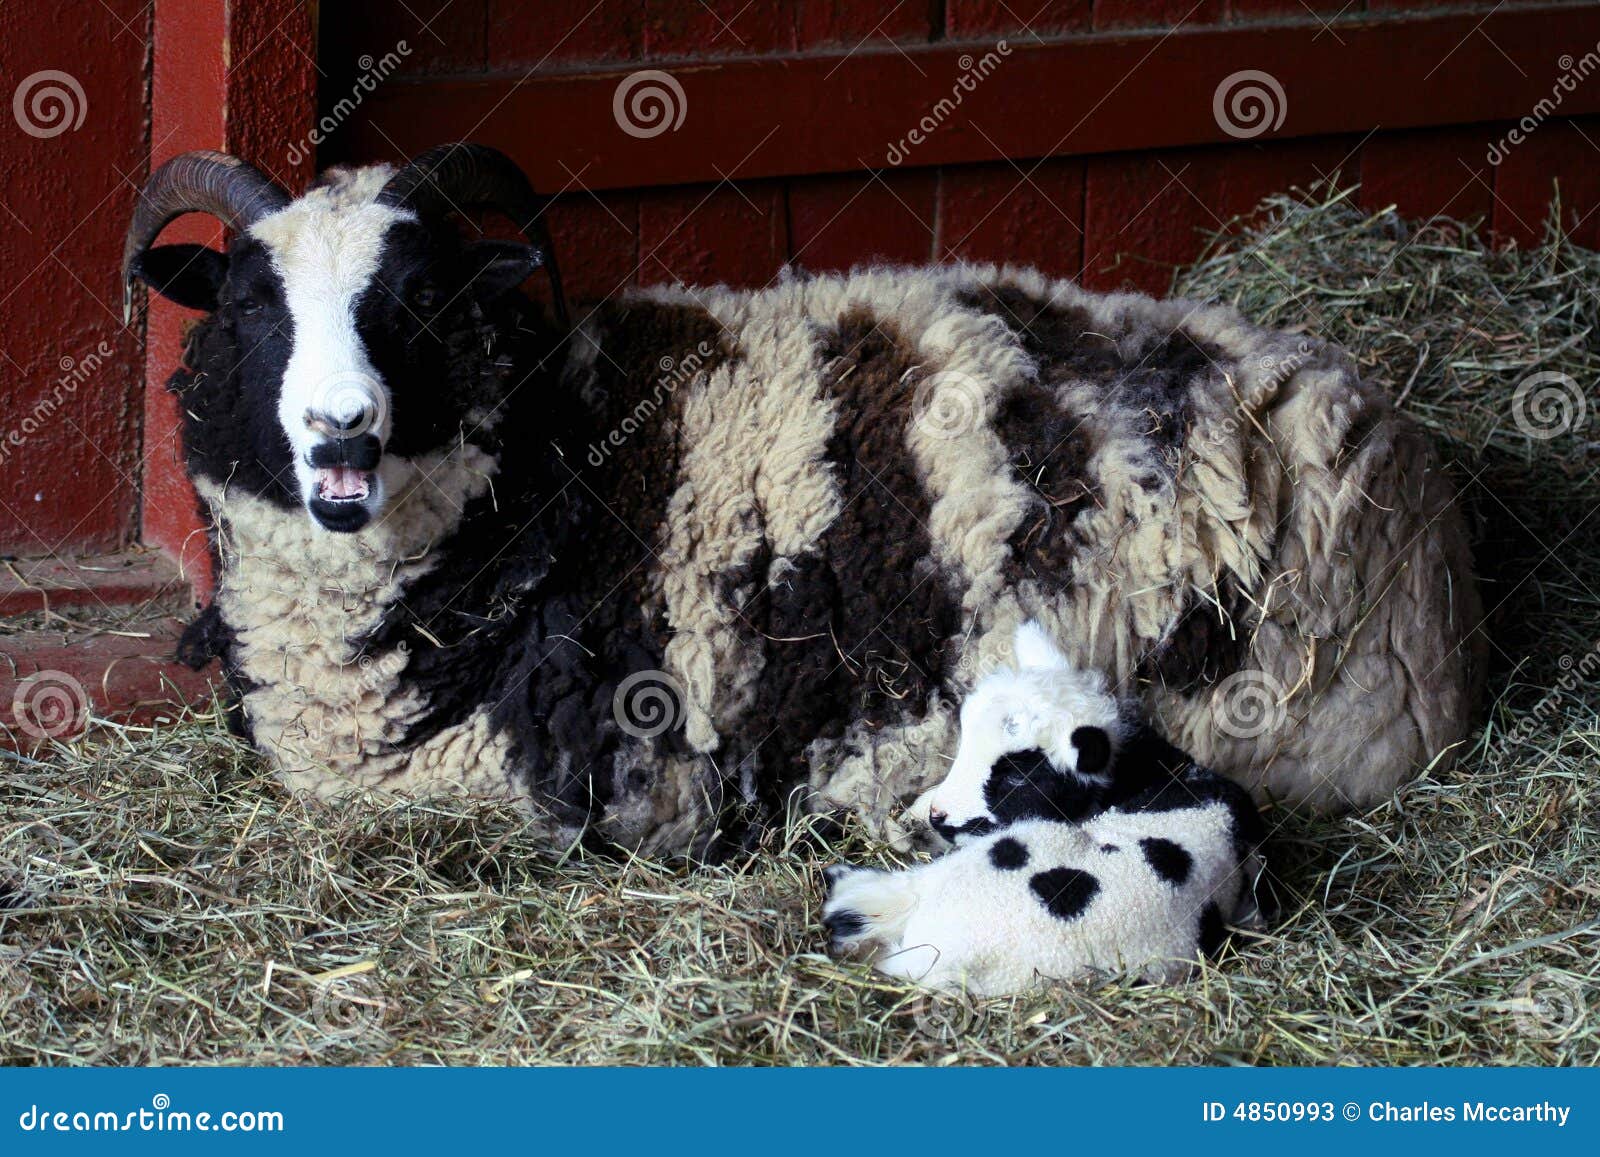 ewe sheep with baby lamb